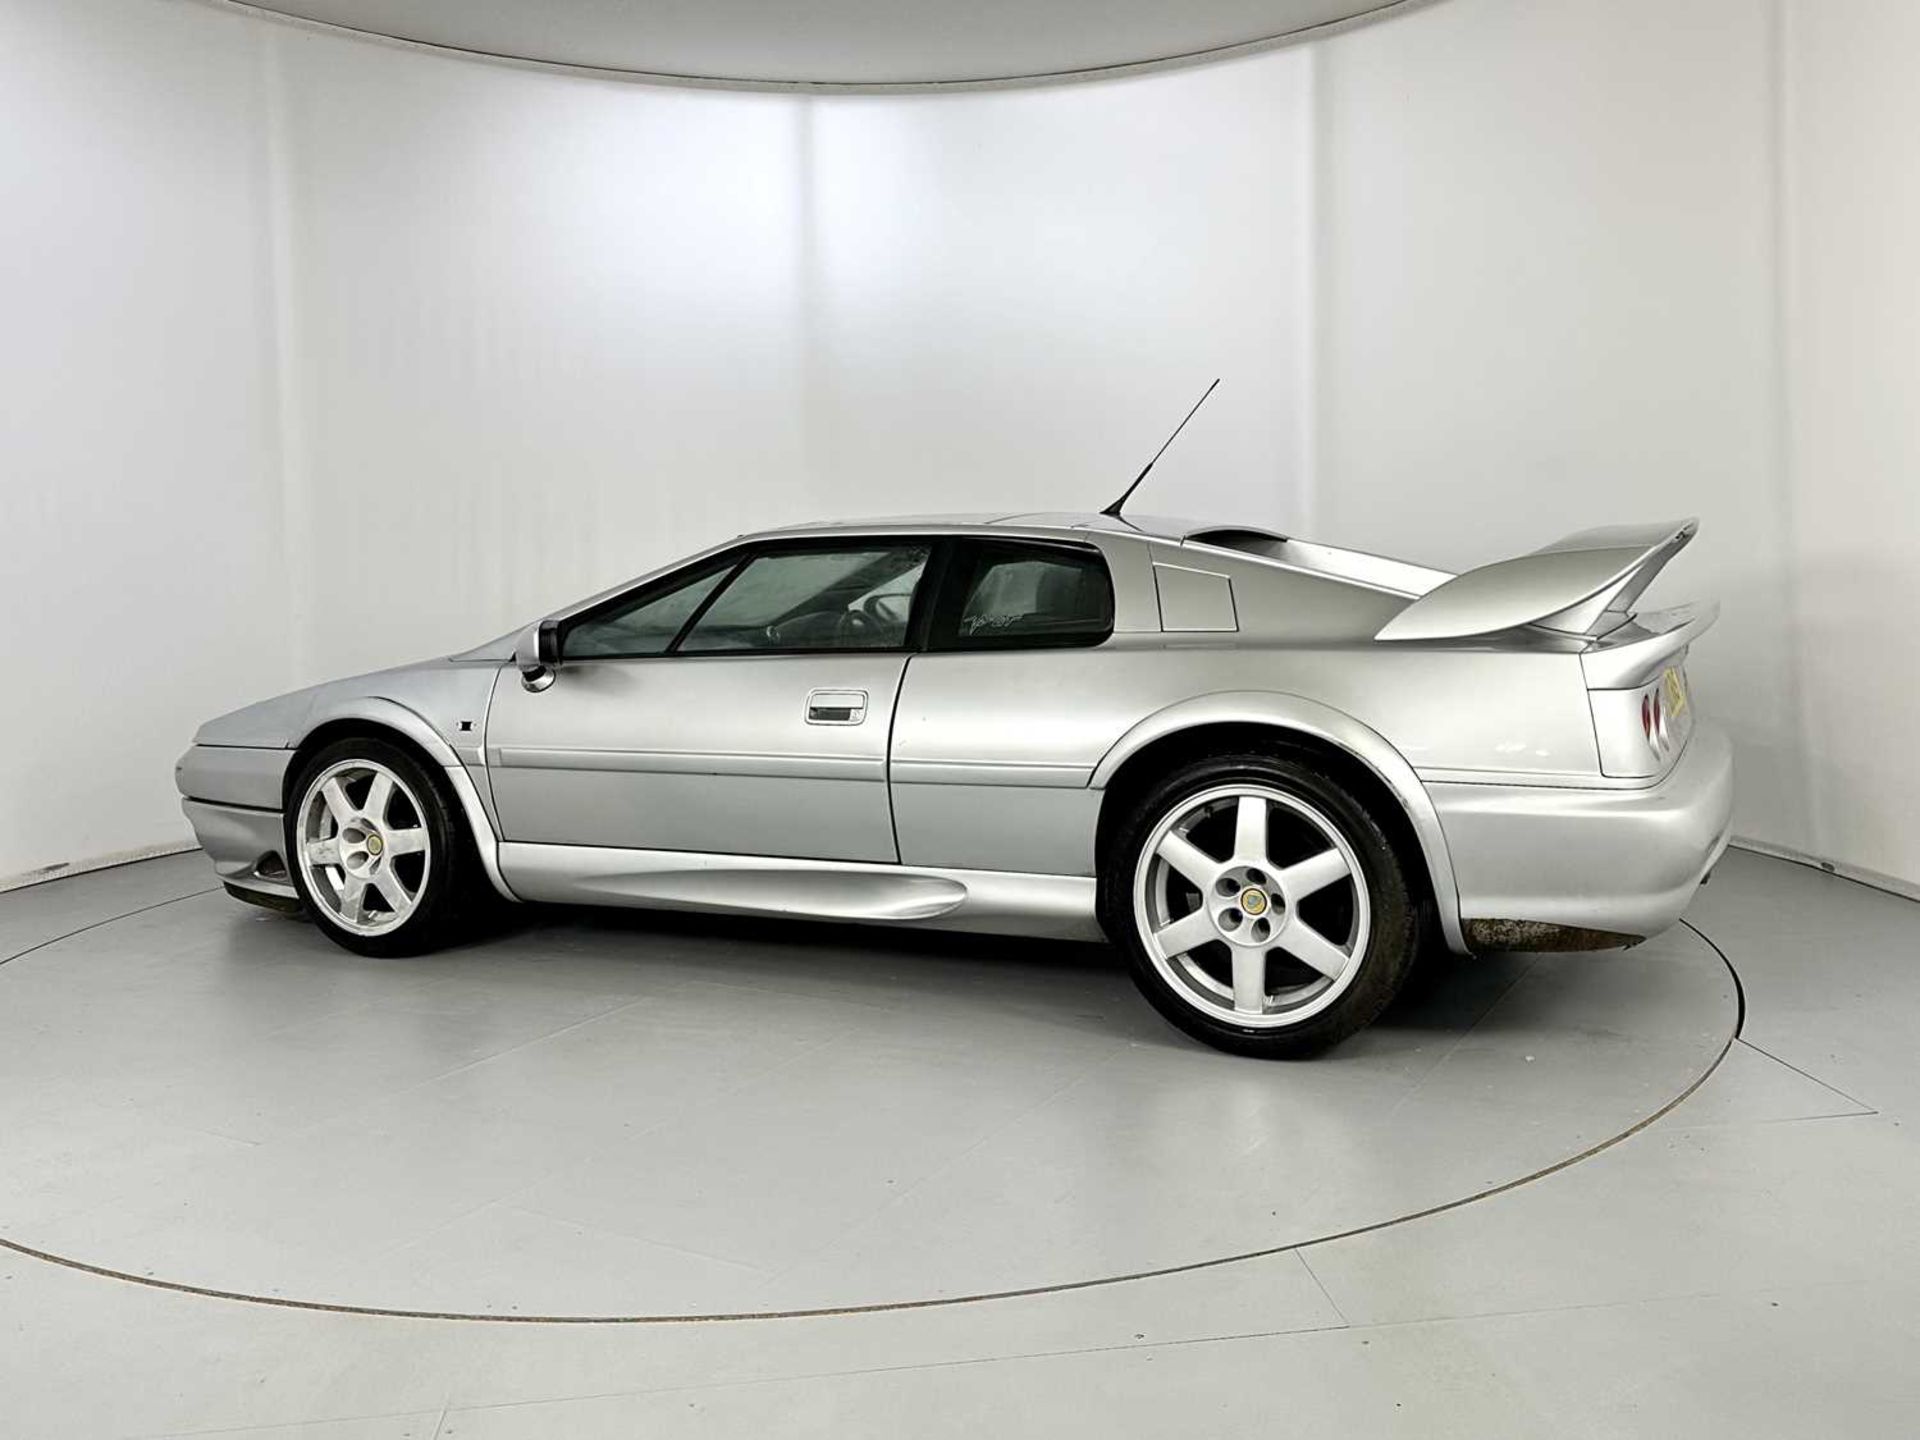 1998 Lotus Esprit V8 GT - Image 6 of 25